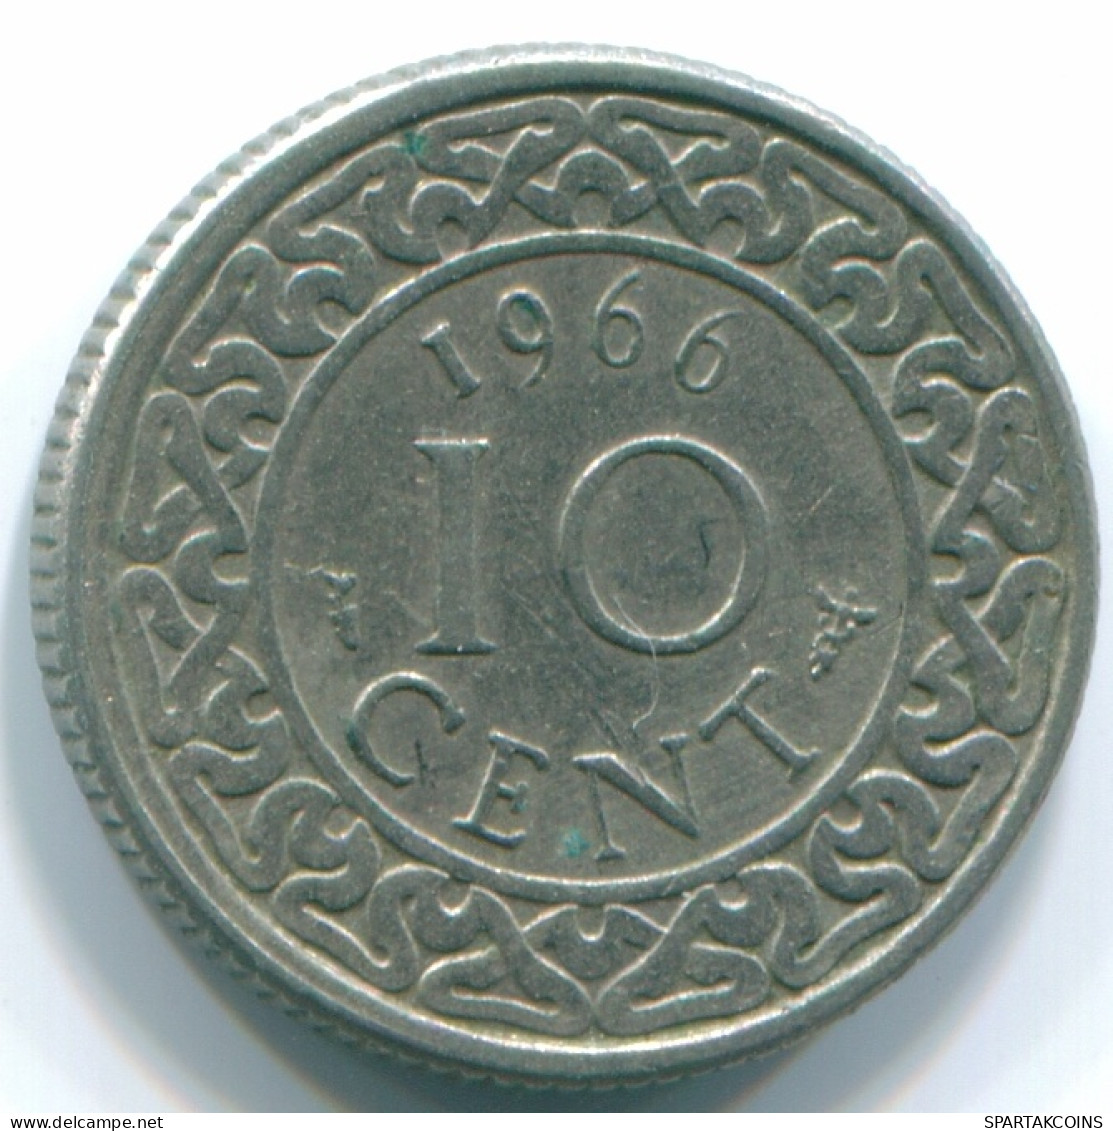 10 CENTS 1966 SURINAME Netherlands Nickel Colonial Coin #S13240.U - Surinam 1975 - ...